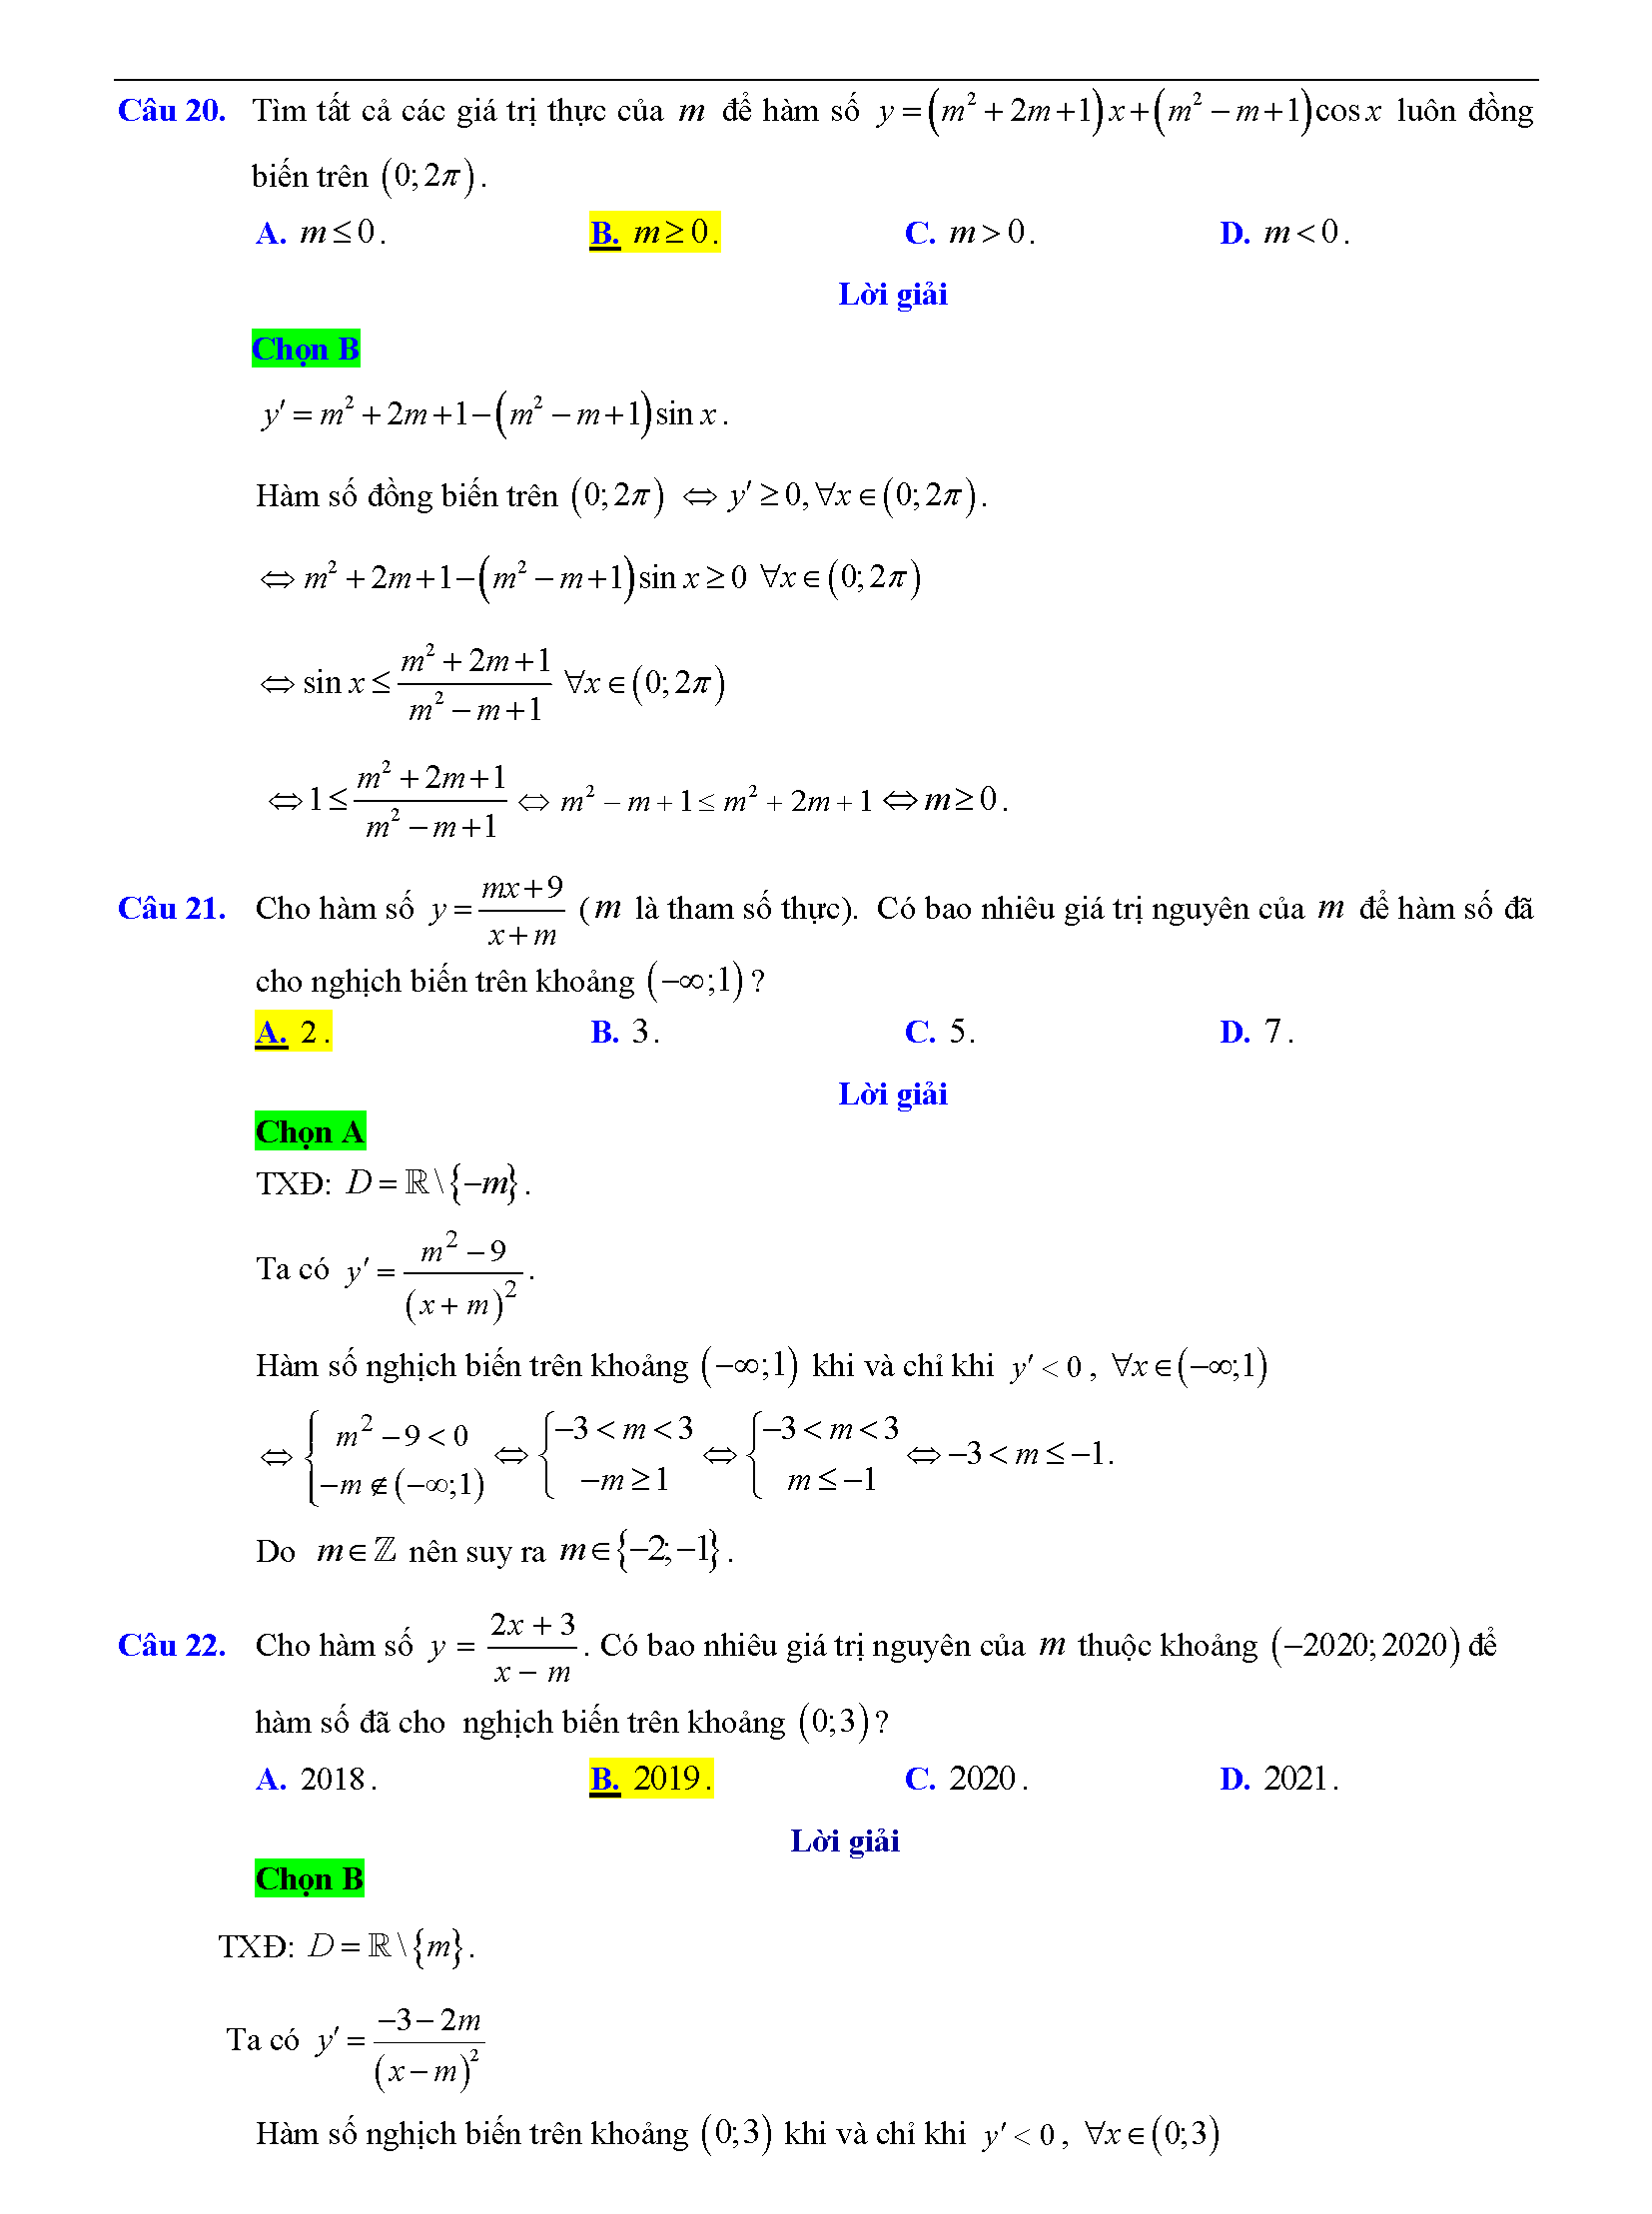 Trắc nghiệm tìm m để hàm số đơn điệu 15